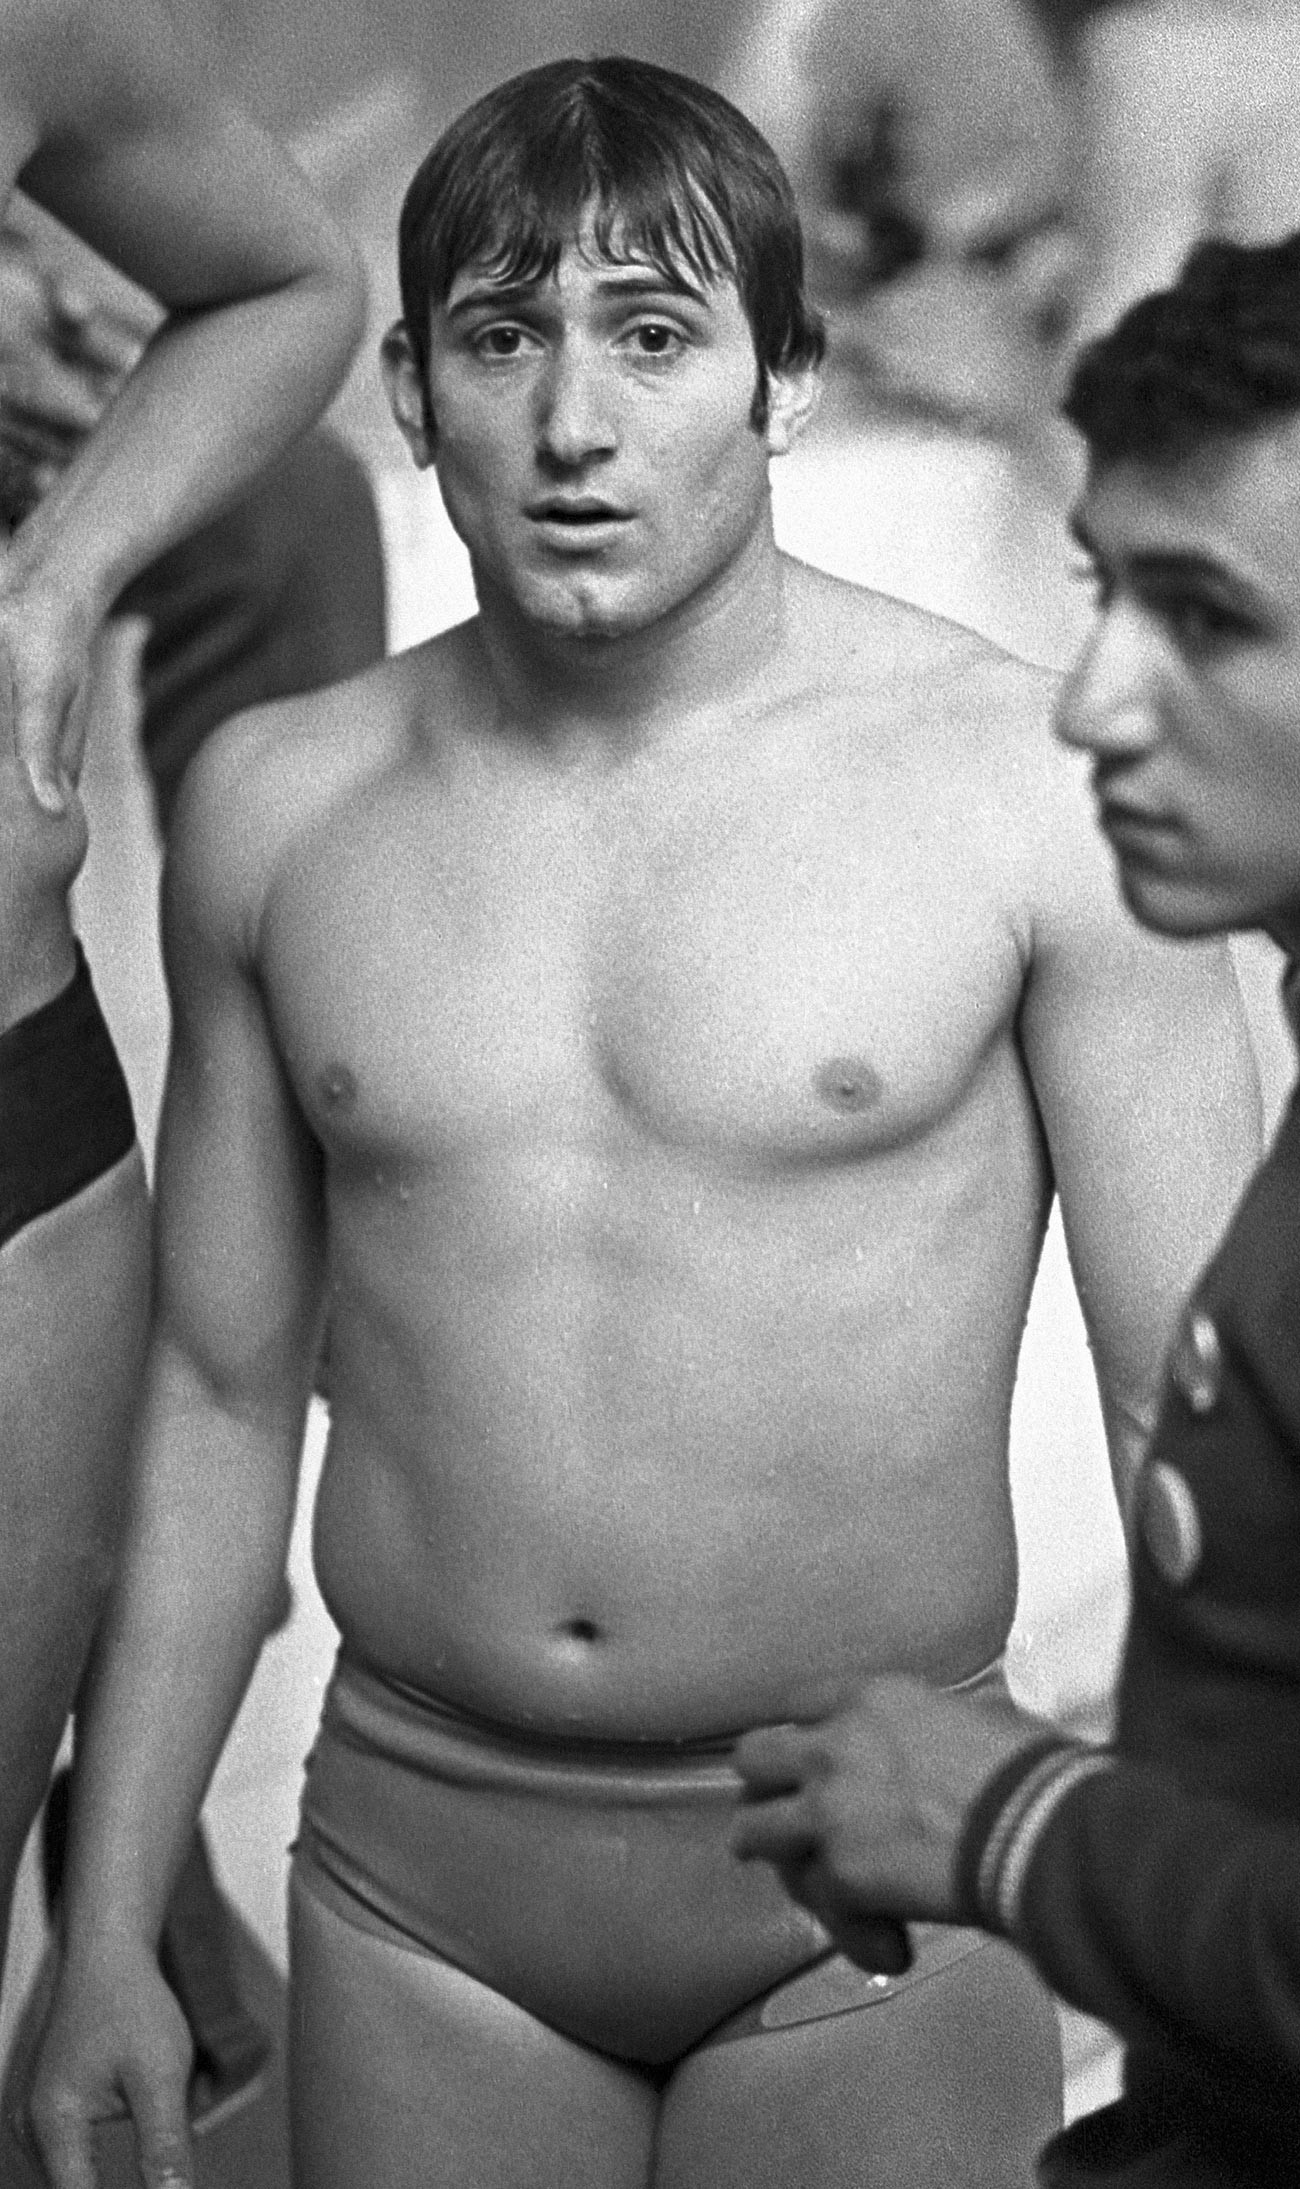 Soviet champion in underwater swimming Shavarsh Karapetyan, Yerevan, 1974